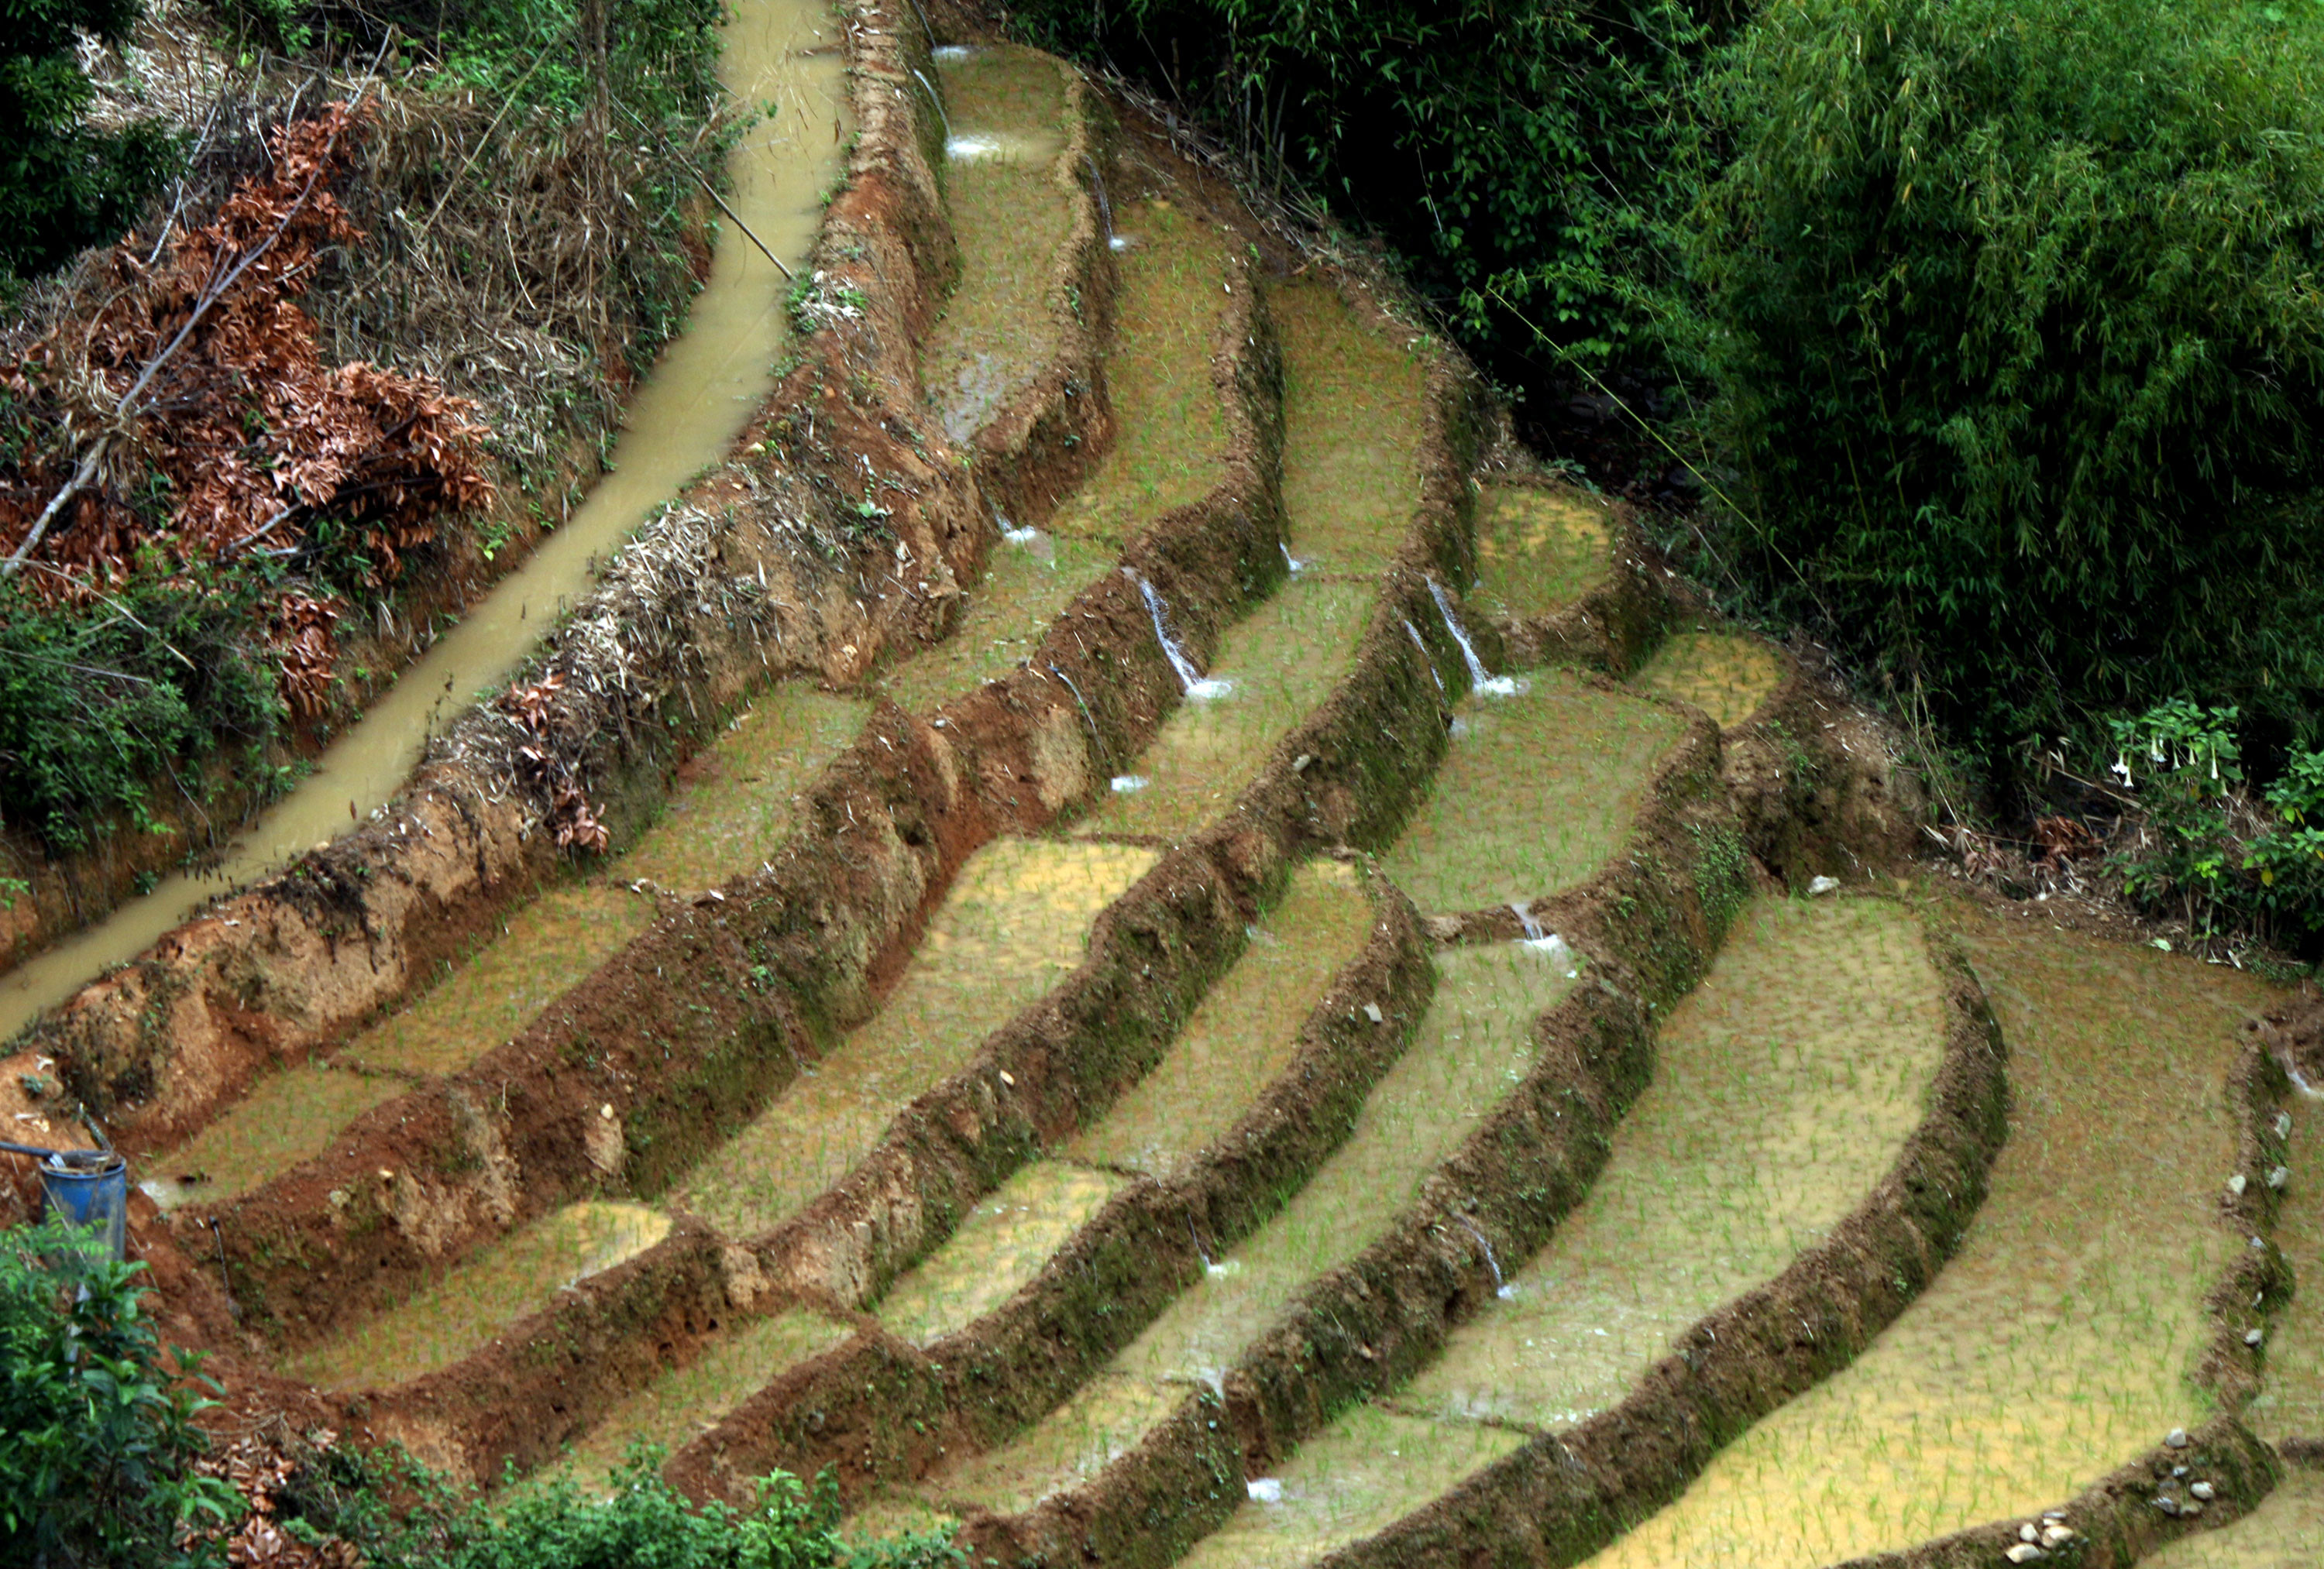 Ở những khu đồi dốc, ruộng bậc thang lấy nước theo cơ chế nước từ ruộng cao chảy xuống ruộng thấp hơn. Do đó, ở các thửa ruộng này nước luôn đầy ắp để người dân yên tâm sản xuất. Ảnh: Đào Thọ